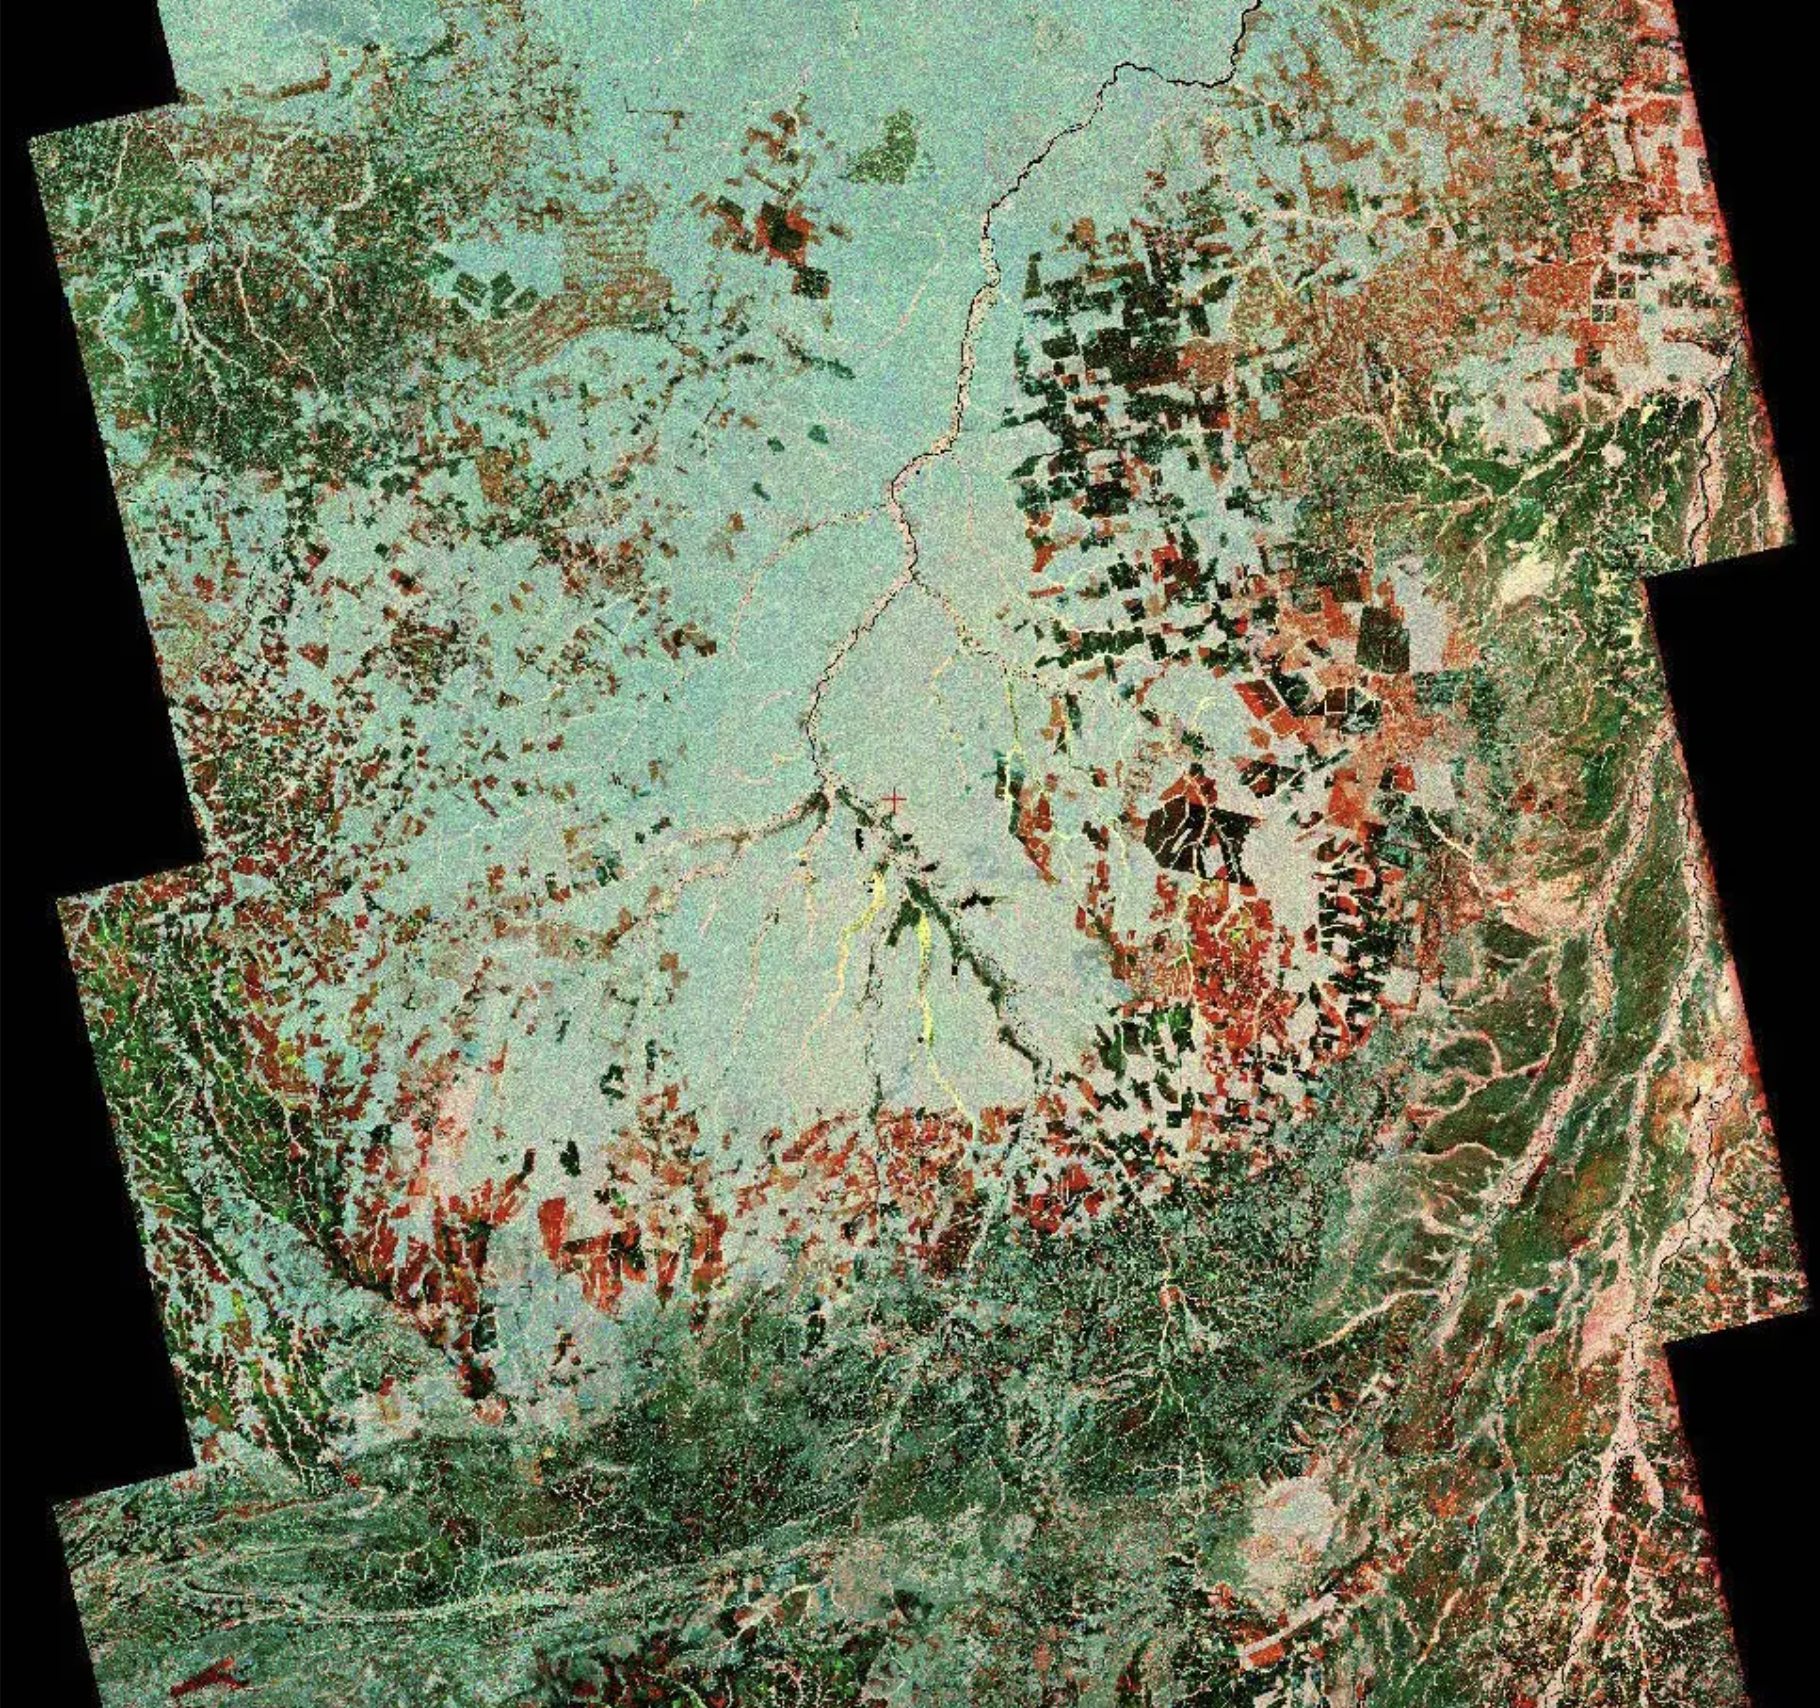 Esta imagen satelital compuesta revela los cambios en la cobertura terrestre en la cuenca del río Xingu de Brasil entre 1996 y 2007. El negro muestra las zonas forestales convertidas en tierras de cultivo antes de 1996, y el rojo muestra las áreas adicionales taladas hasta 2007.